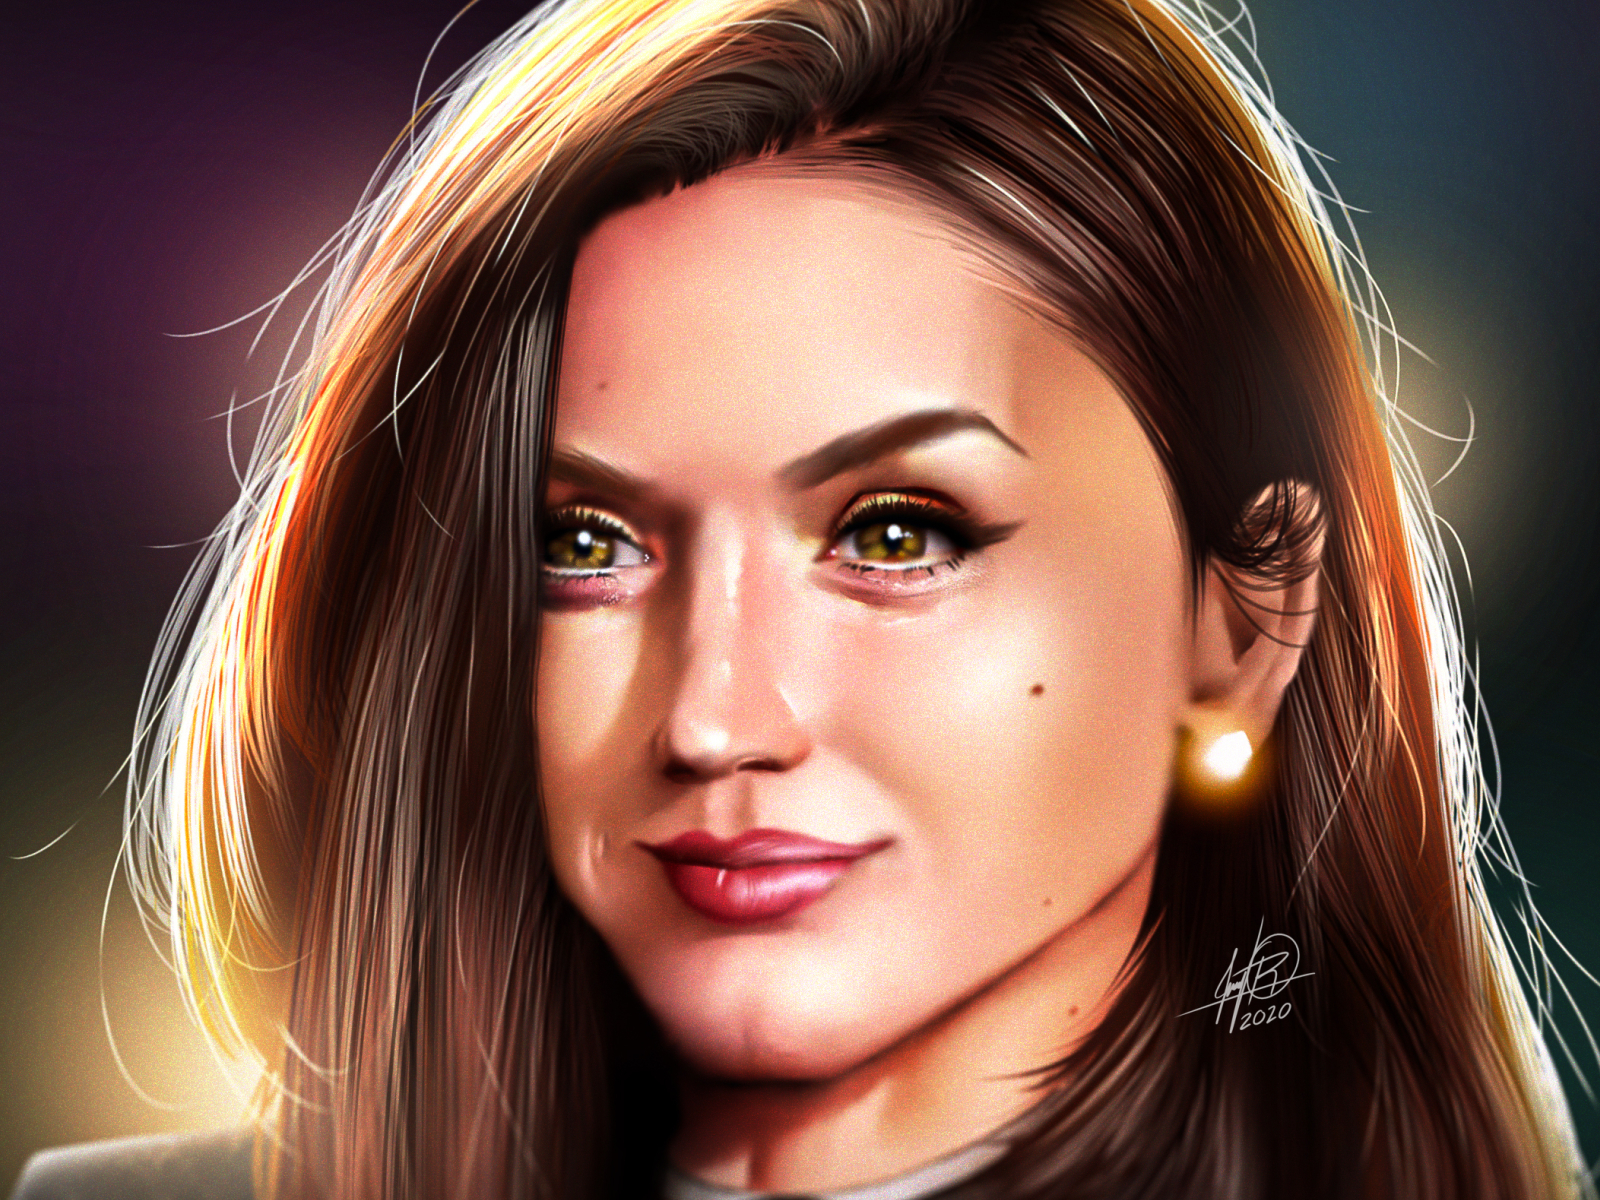 Ana de Armas - Digital Portrait actress artwork colors digital art illustration movie portrait series